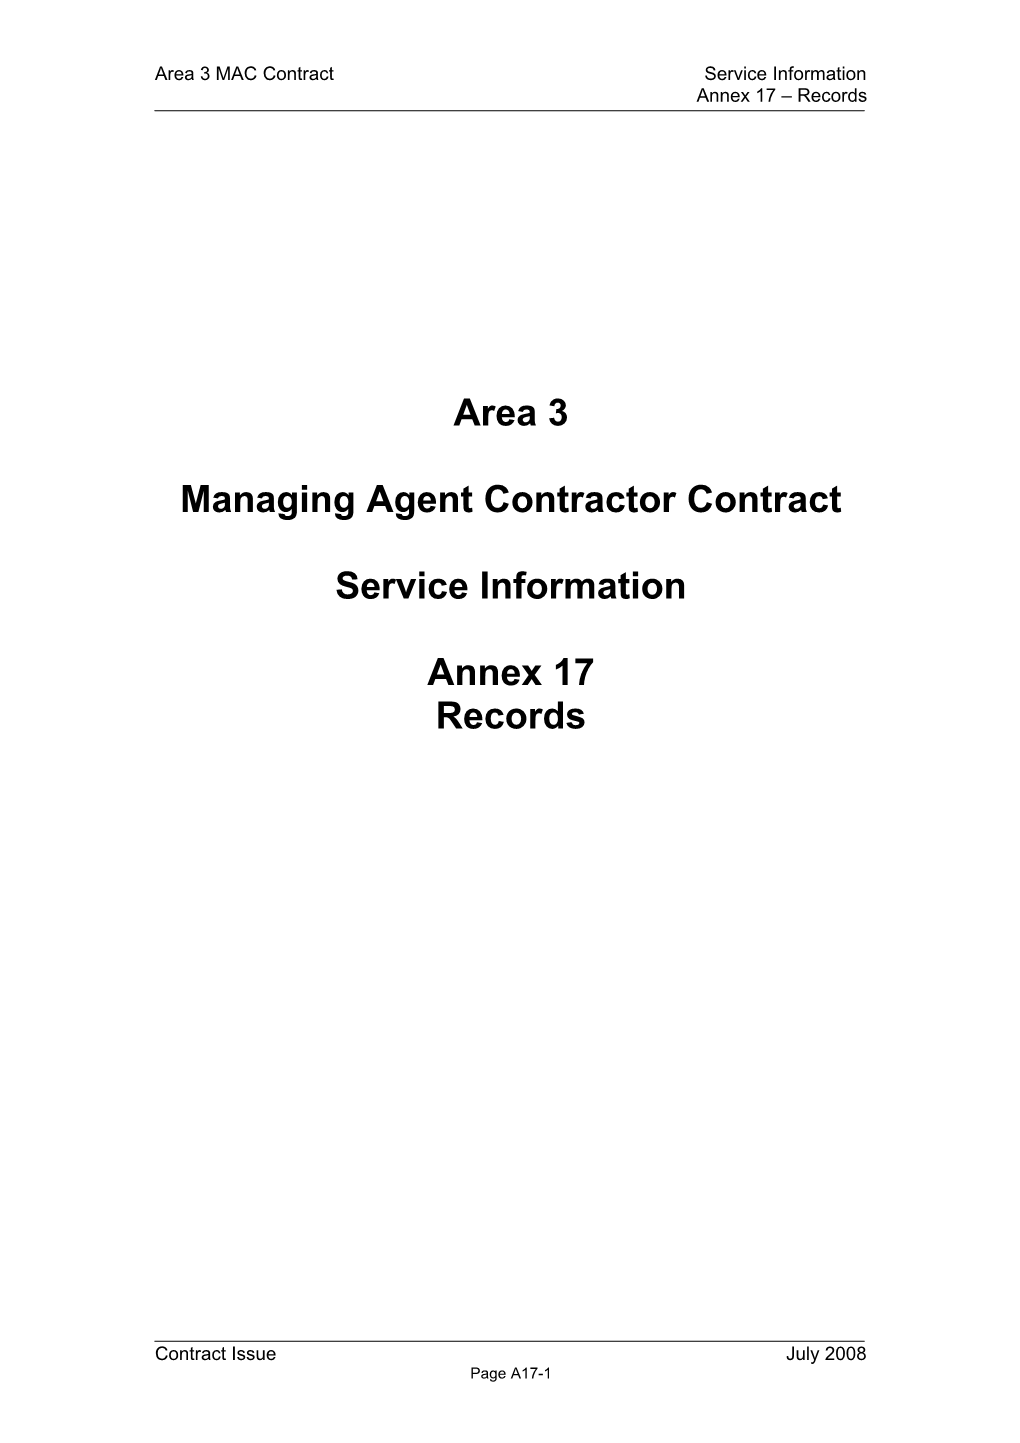 MAC Model Service Information Annex 17